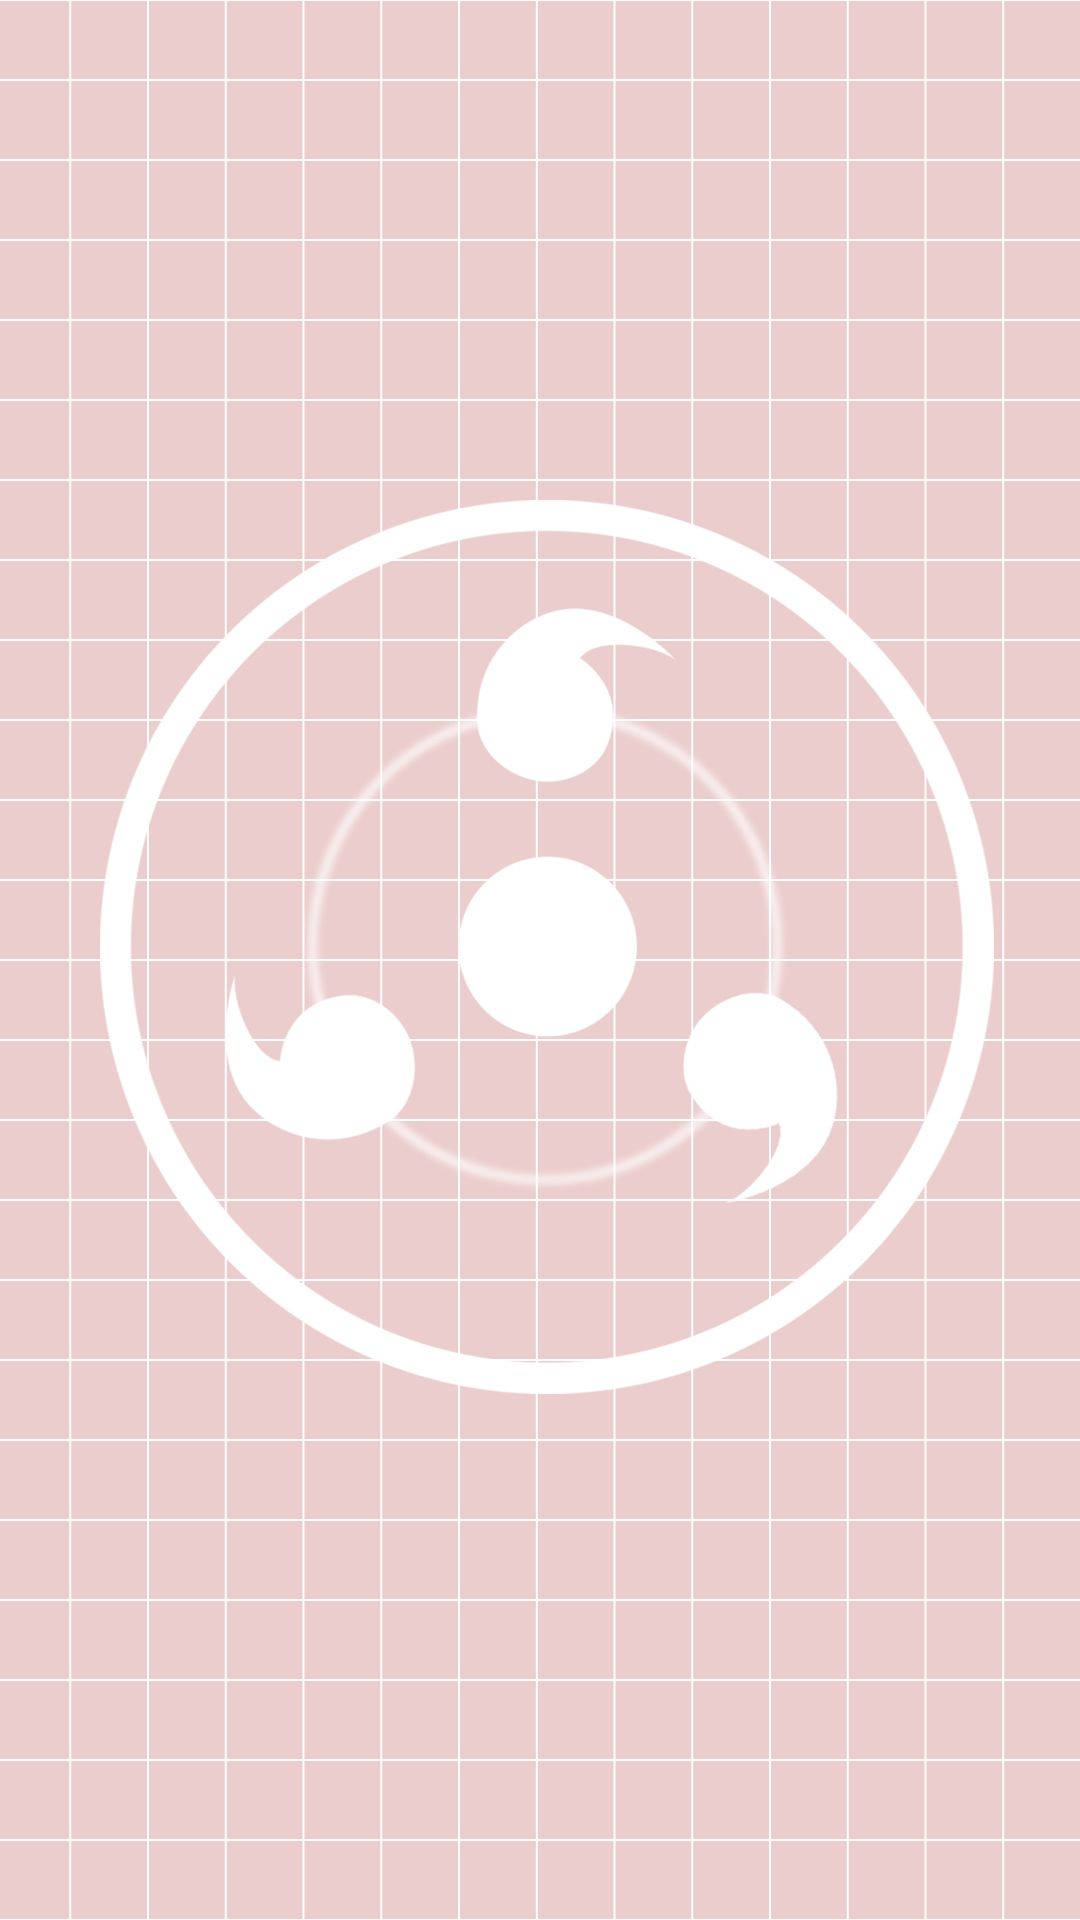 Naruto Symbol Classic Design Background